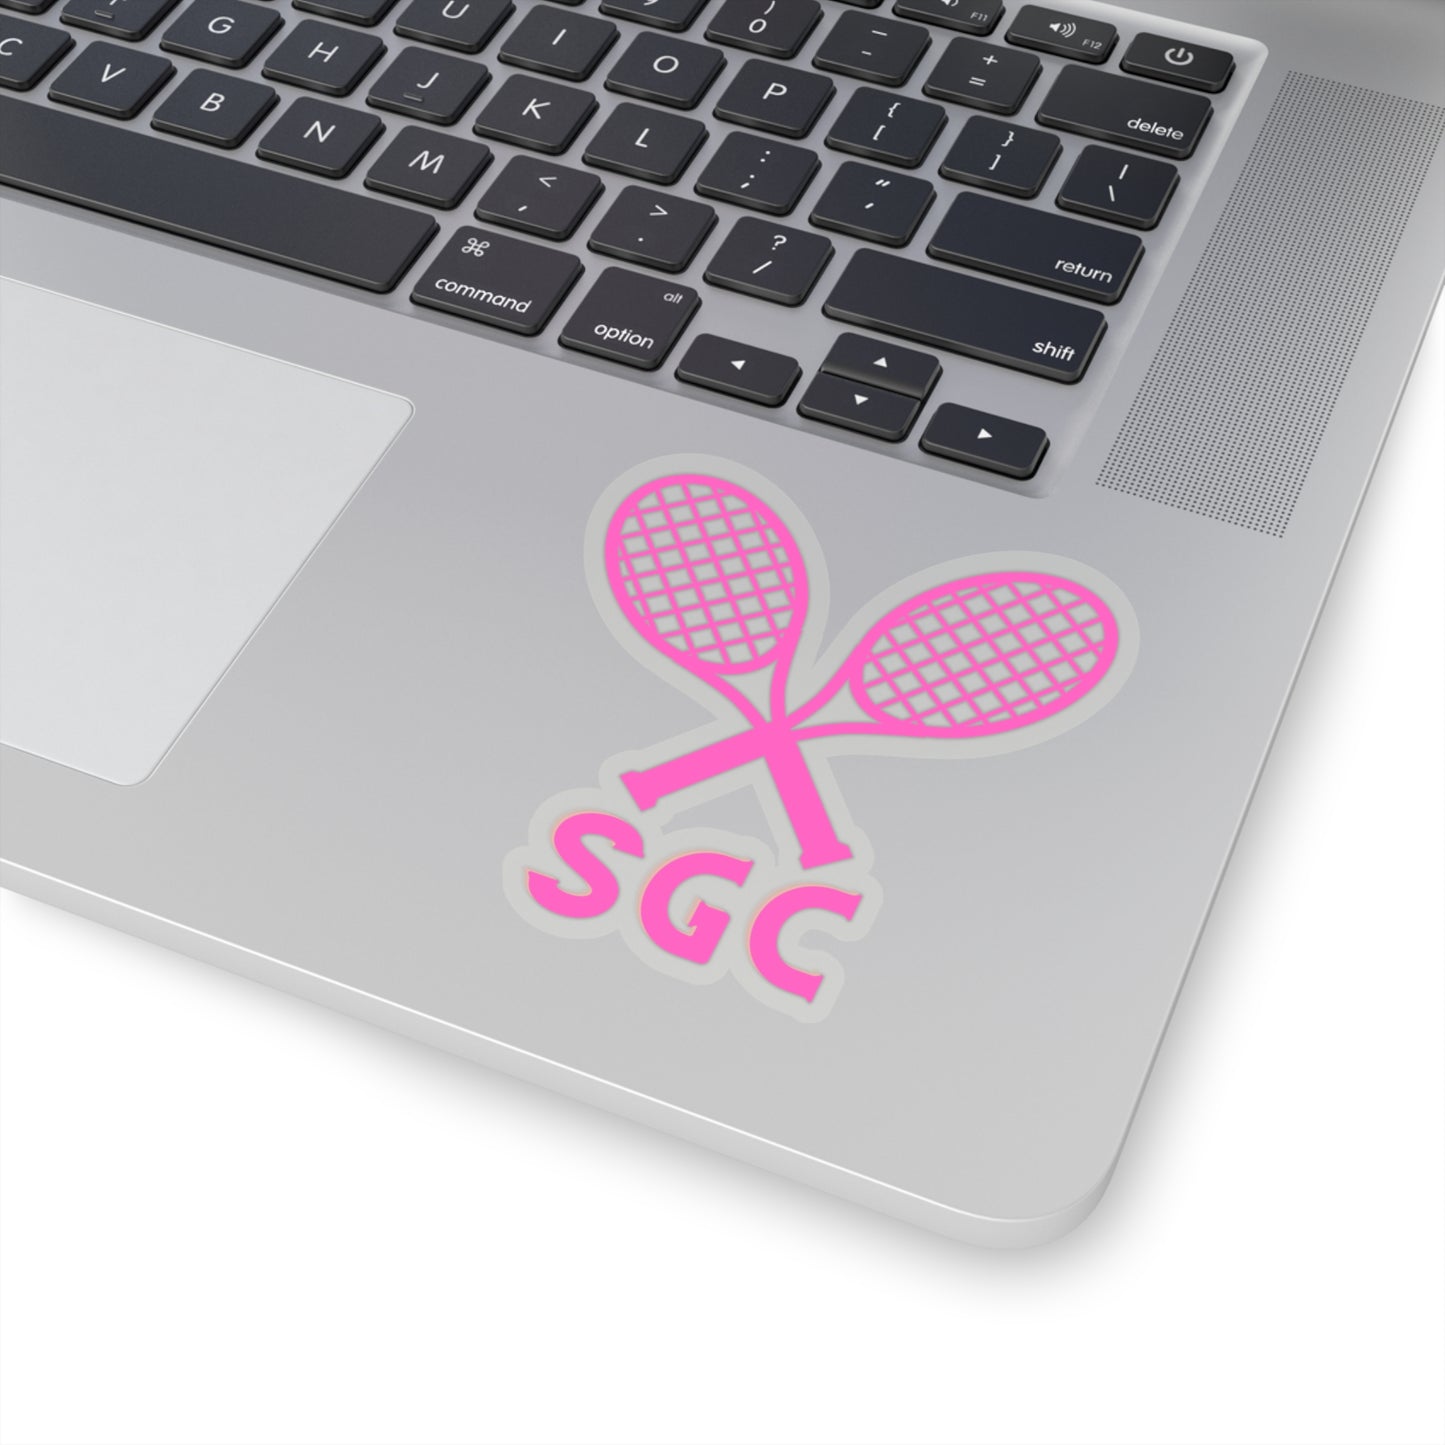 SGC Tennis Sticker